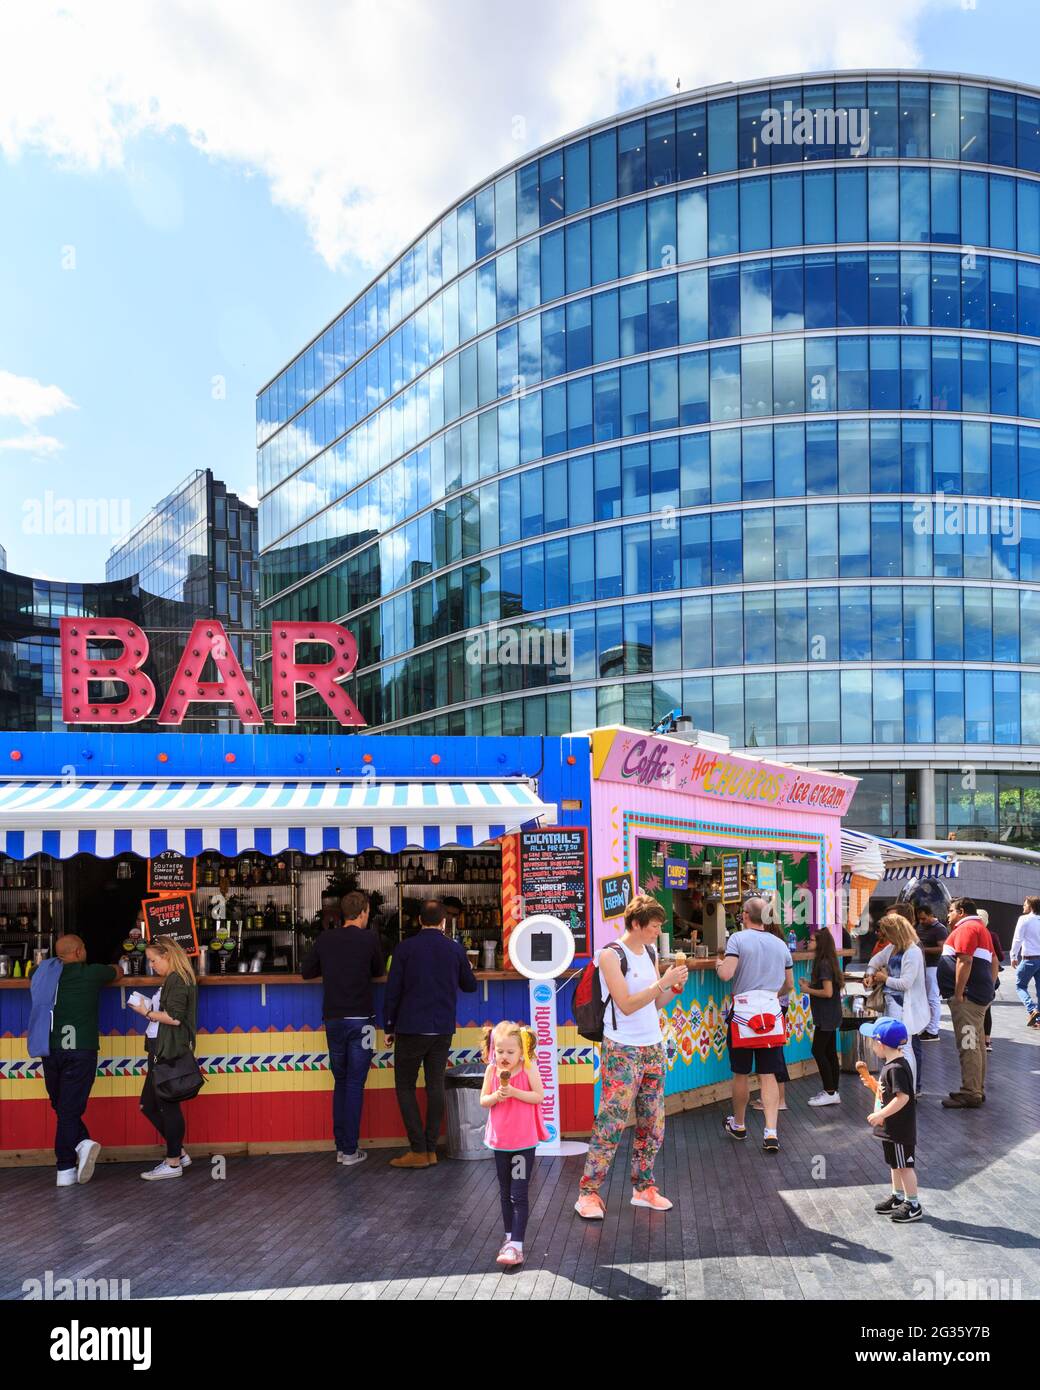 Les gens achètent des boissons dans un bar extérieur pop up à More London en plein soleil d'été avec Tower Bridge et City Hall en arrière-plan, Londres, Angleterre Banque D'Images